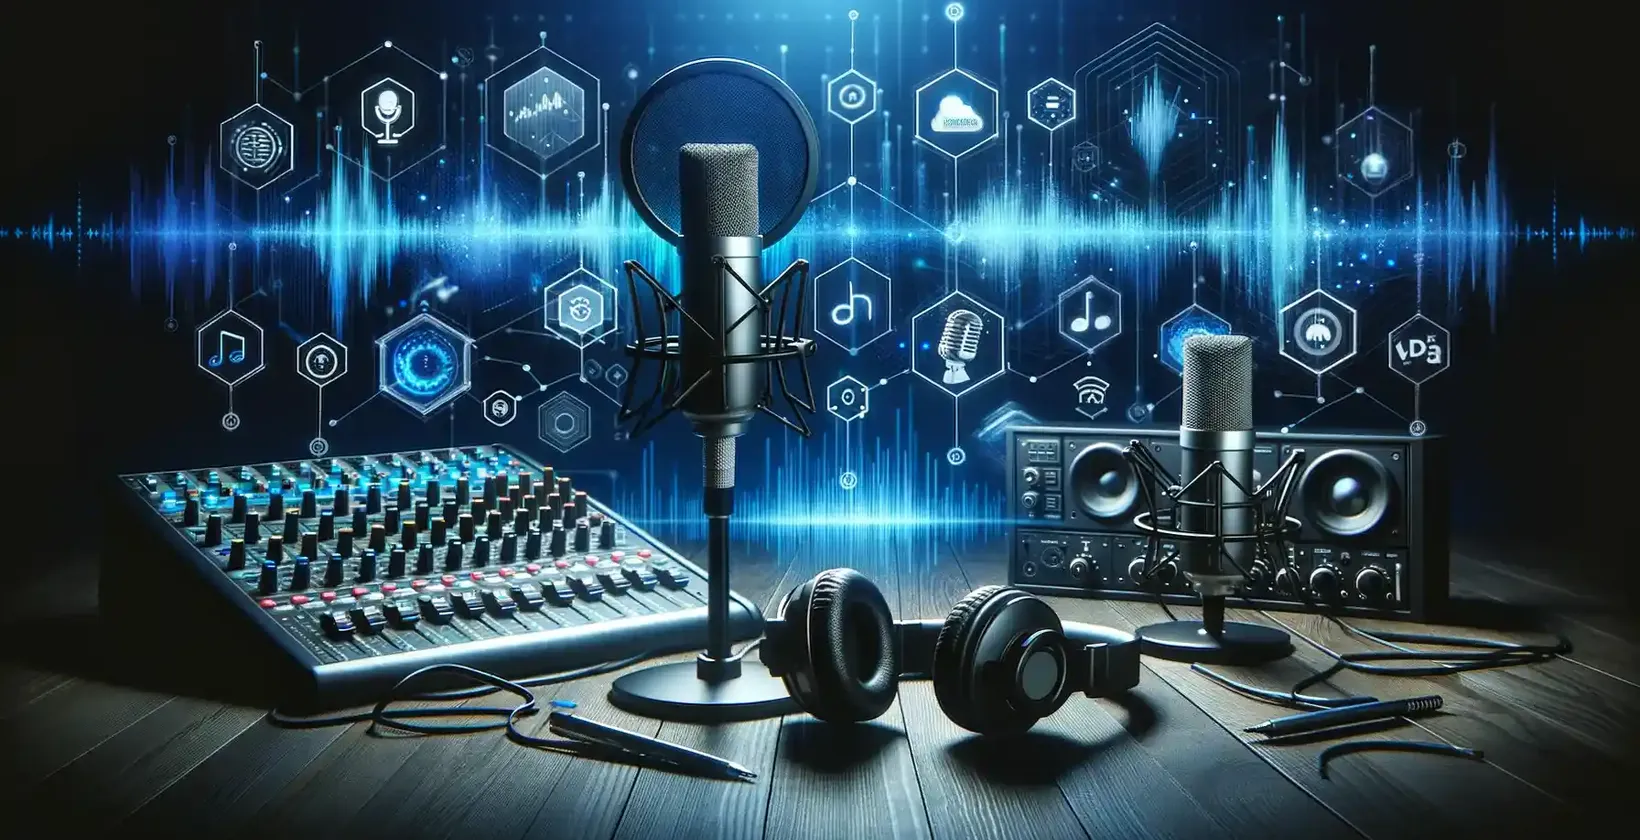 Pedoman transkripsi podcast pada tahun 2023: Peralatan podcast modern dengan antarmuka digital pada latar belakang gelap.